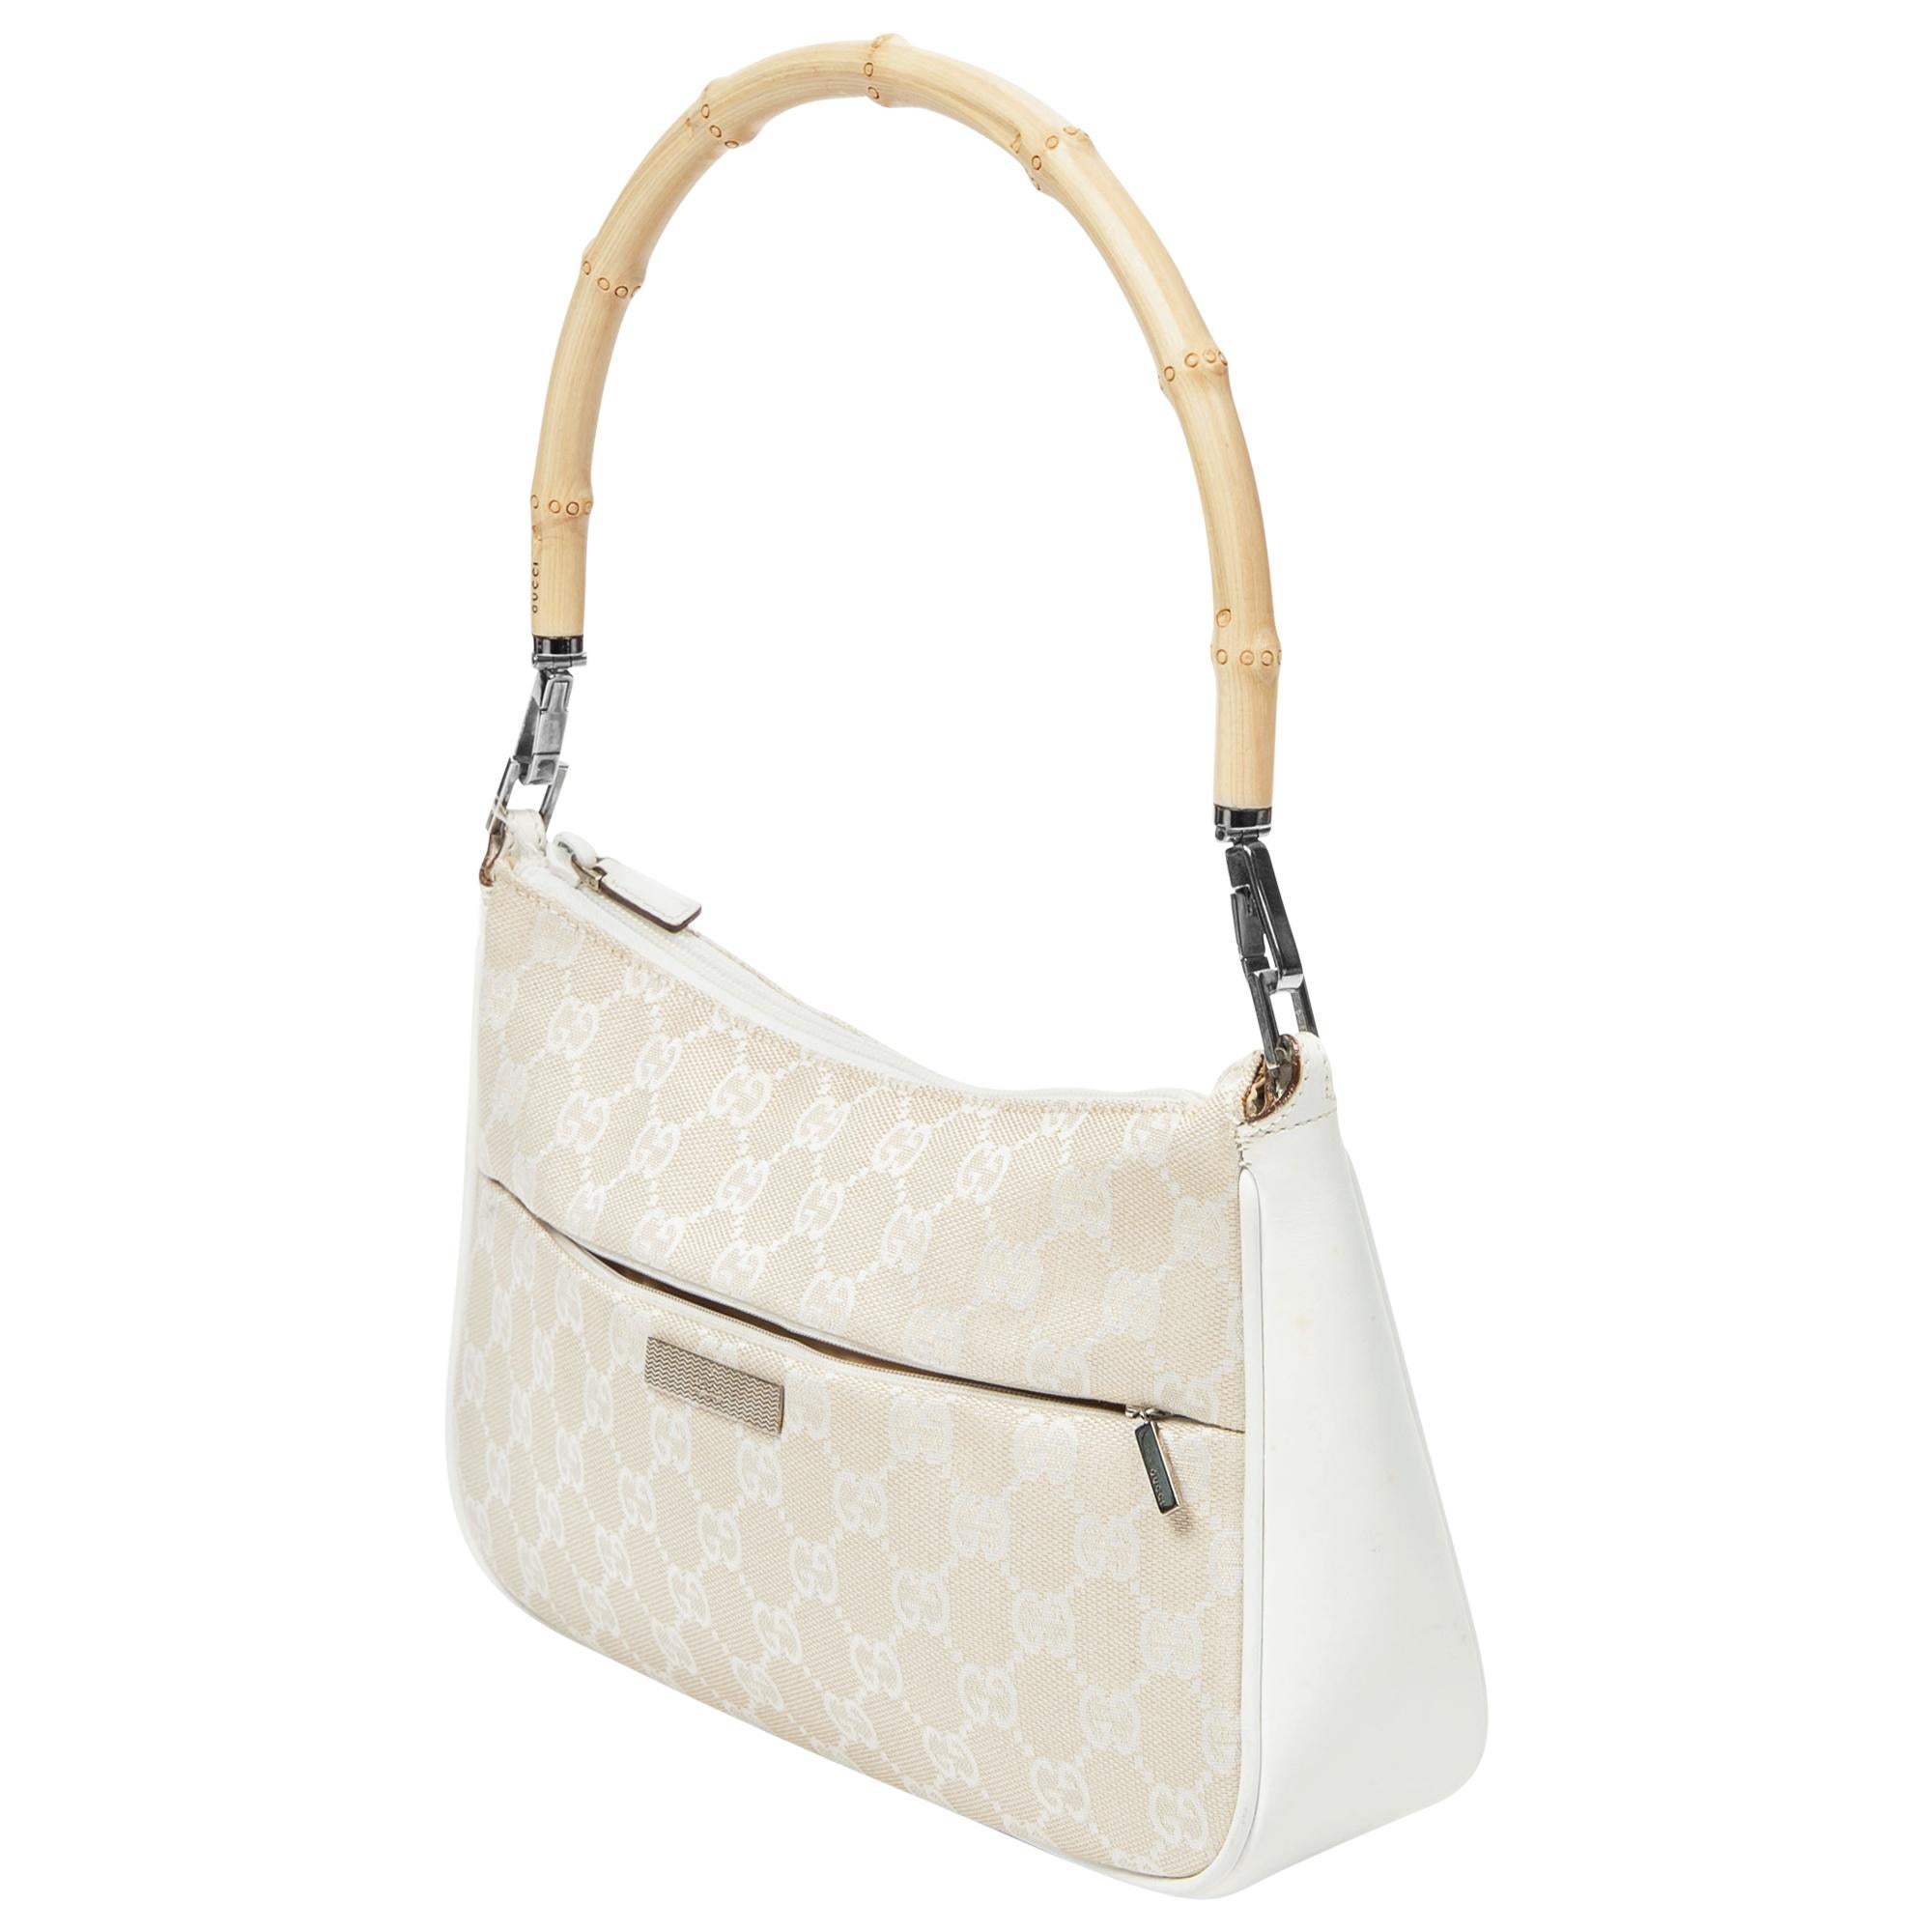 Mit der weiß/beigen GG Bamboo Shoulder Bag von Gucci können Sie Ihren Alltagsstil aufwerten. Sie ist aus strapazierfähigem Canvas in einem schicken Beige-Ton gefertigt und strahlt unaufdringliche Raffinesse aus. Die Tasche ist mit silberfarbenen